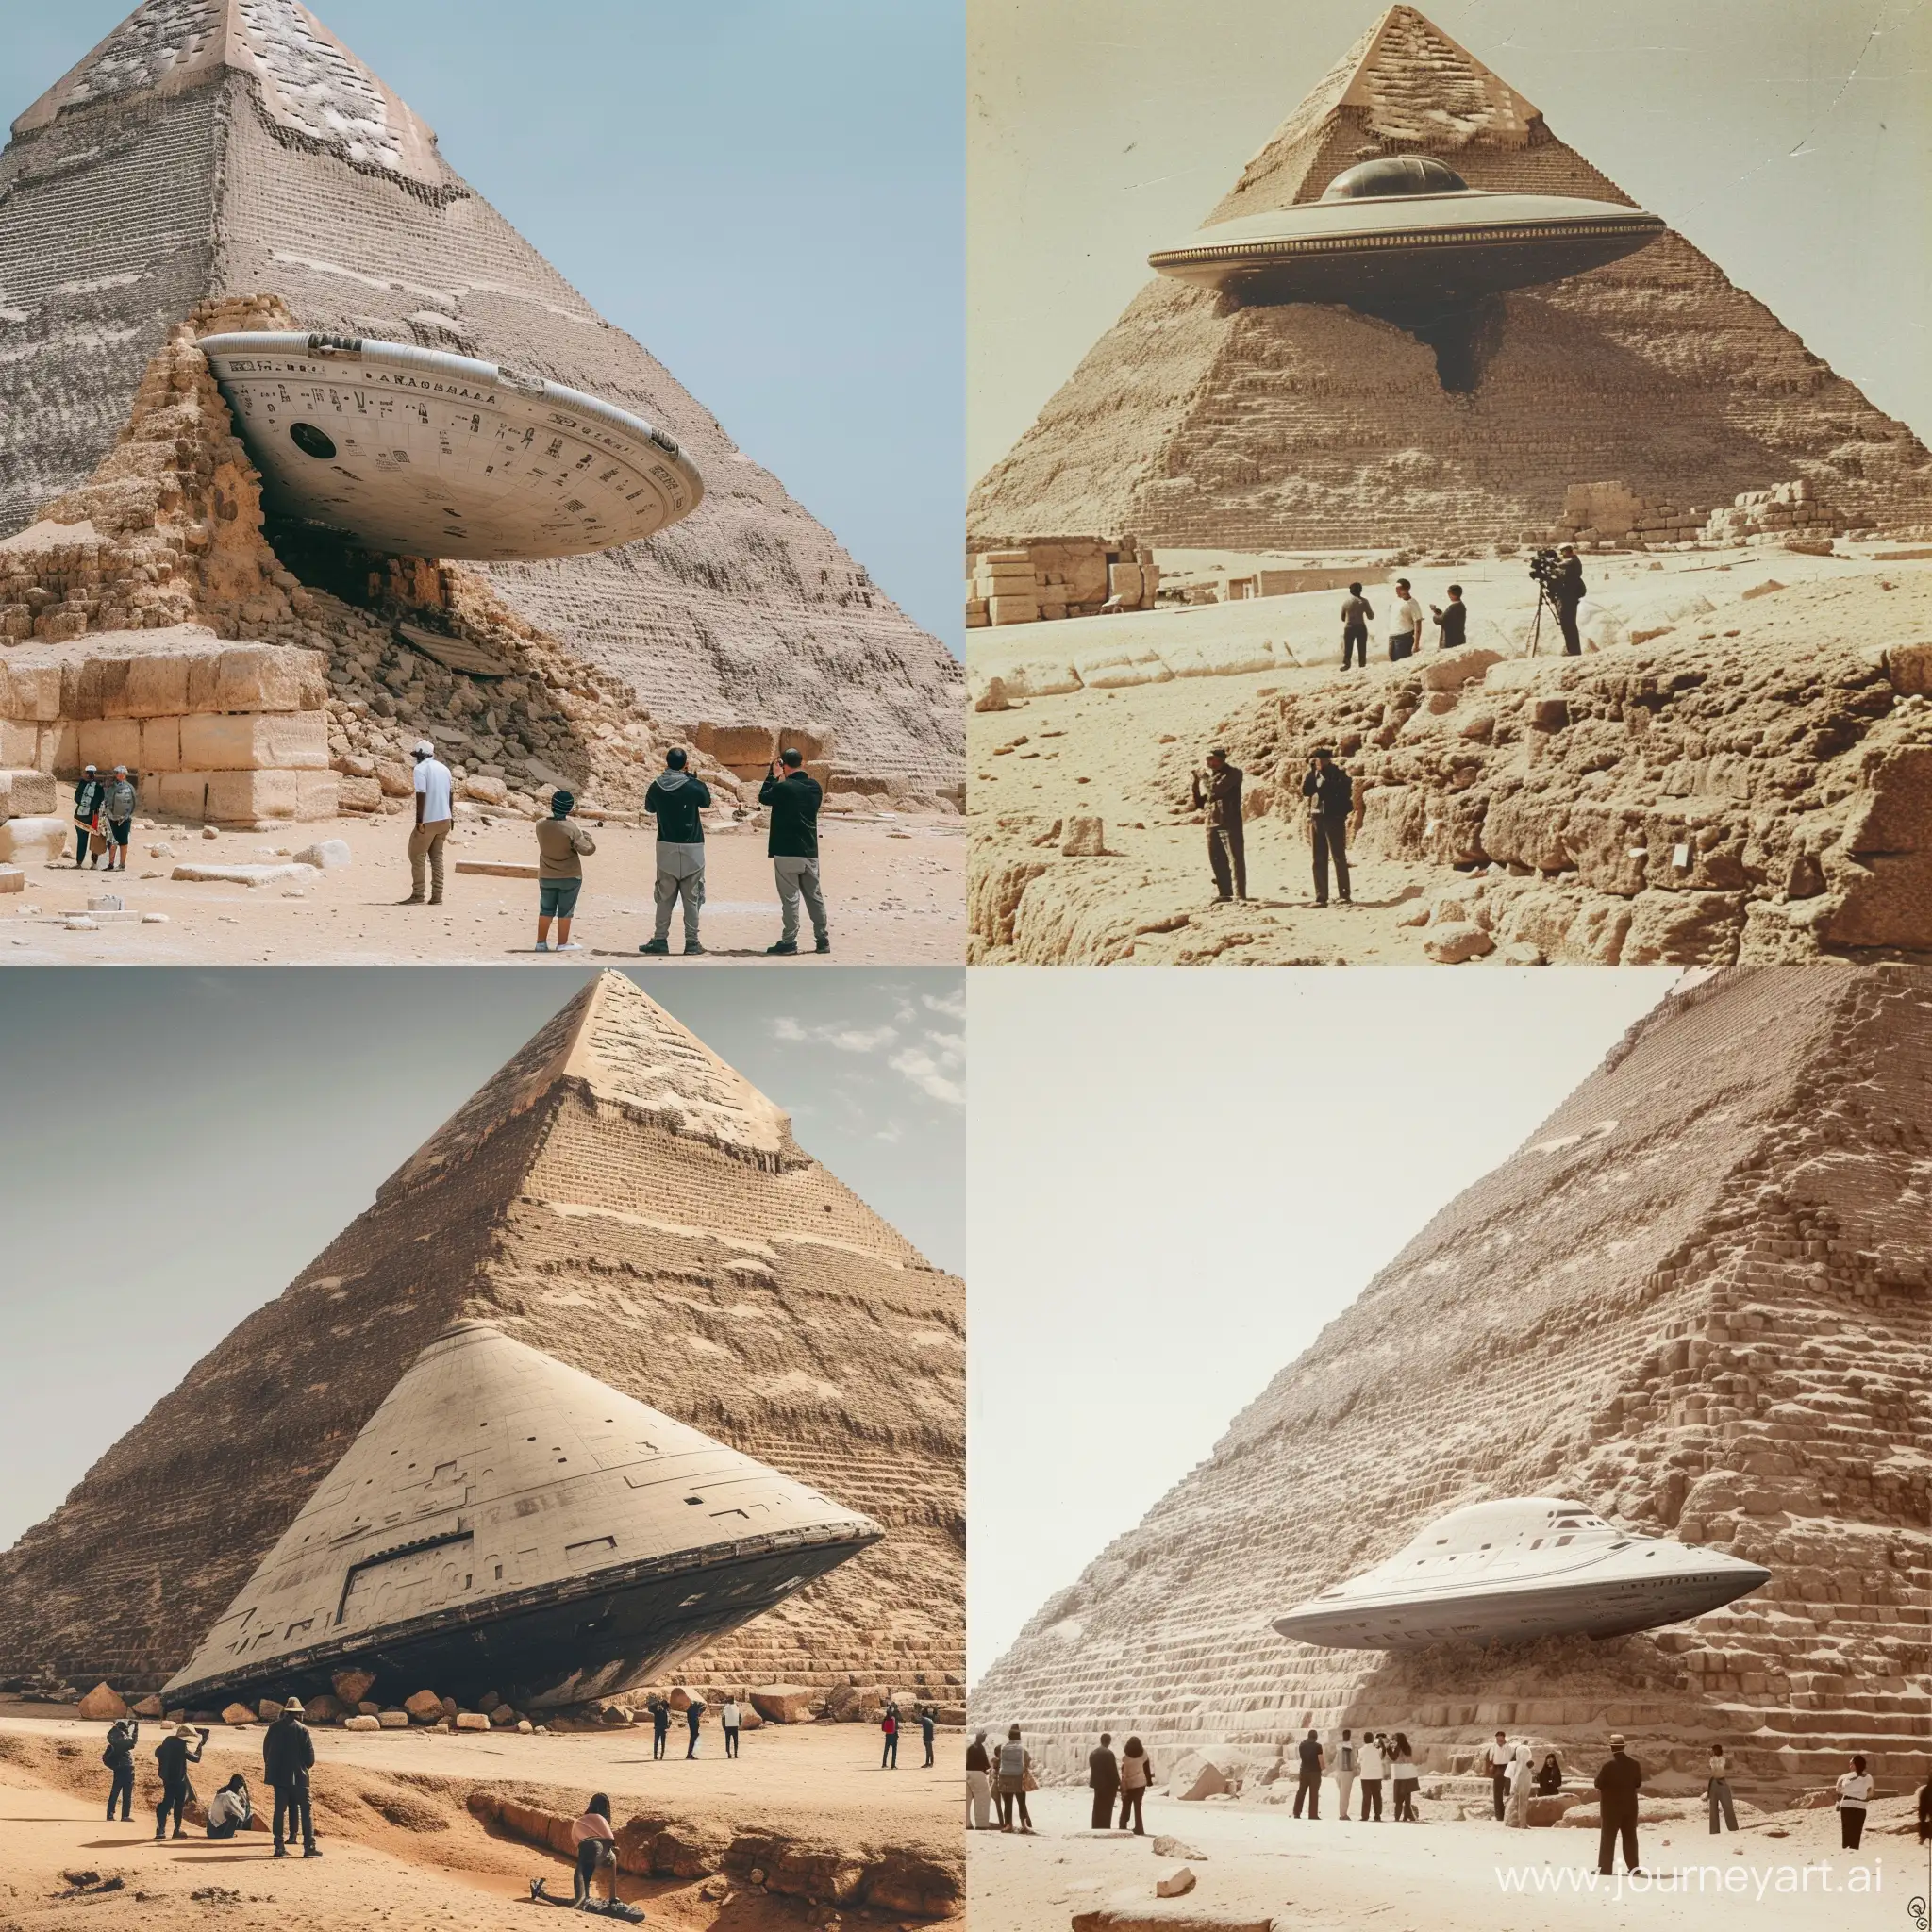 половина пирамиды хеопса разрушилась и стал виден инопланетный корабль торчащий из нее, старый корабль, люди стоят и фотографируют это издалека